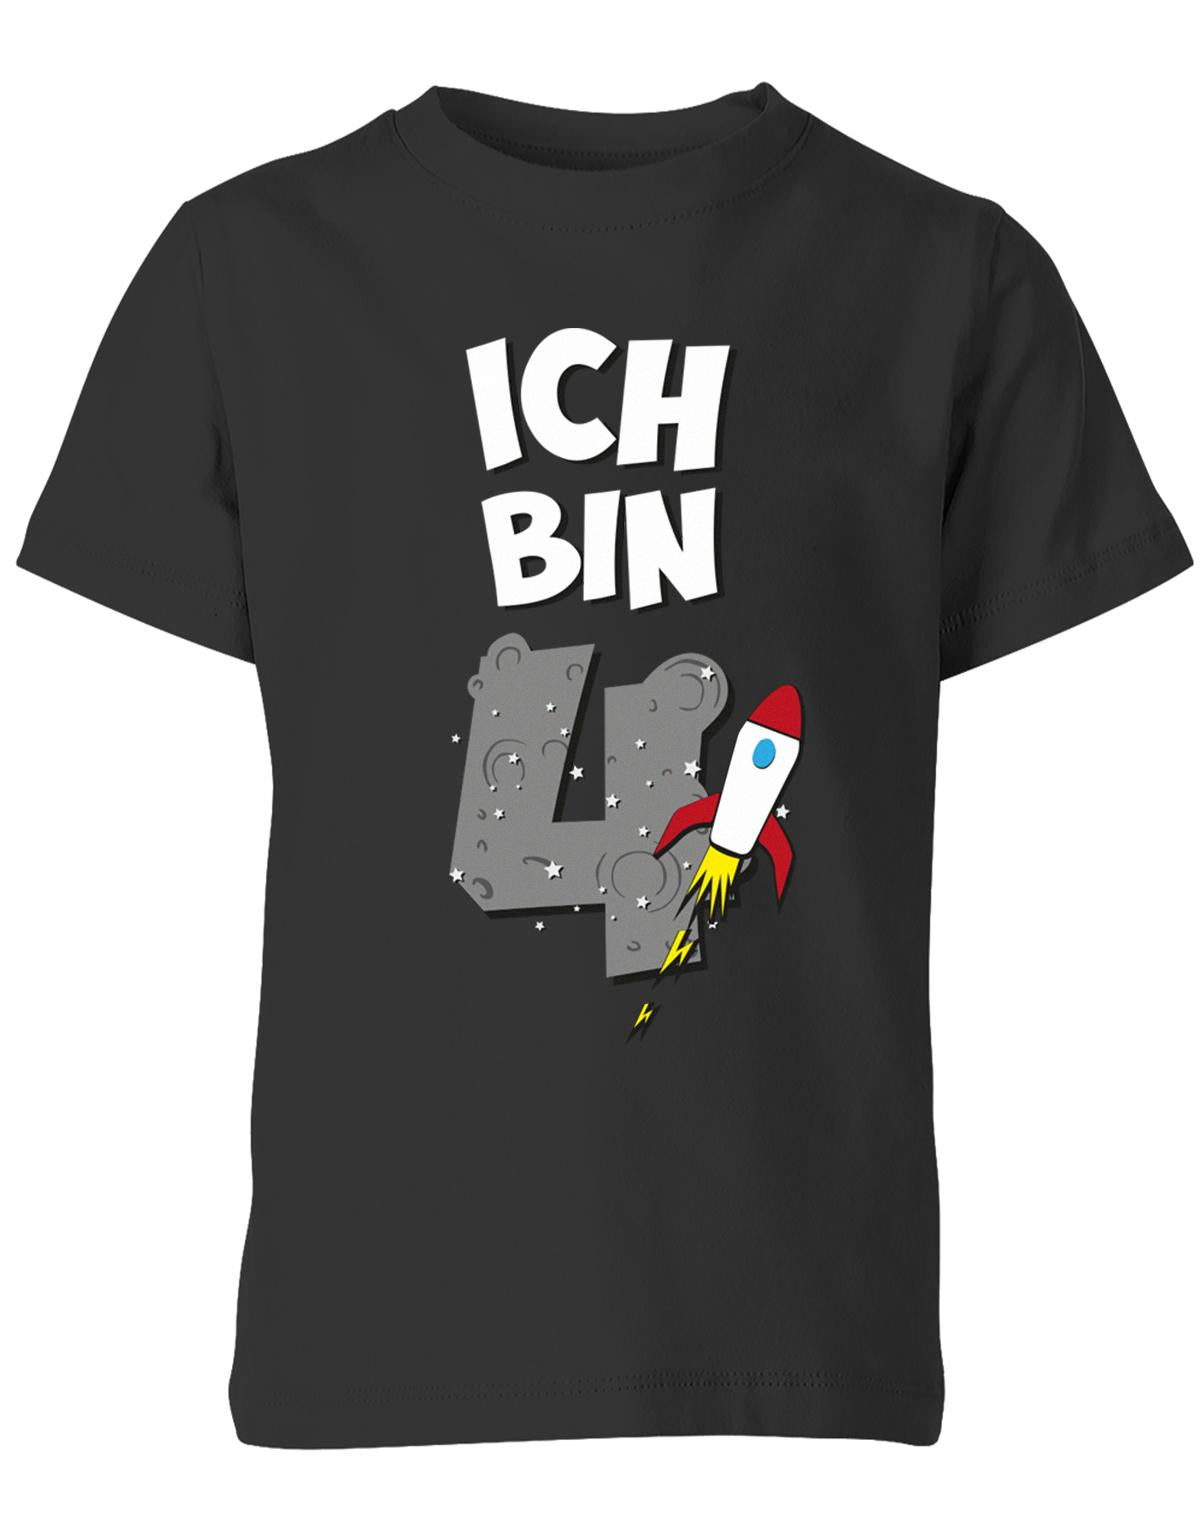 ich-bin-4-weltraum-rakete-planet-geburtstag-kinder-shirt-schwarz